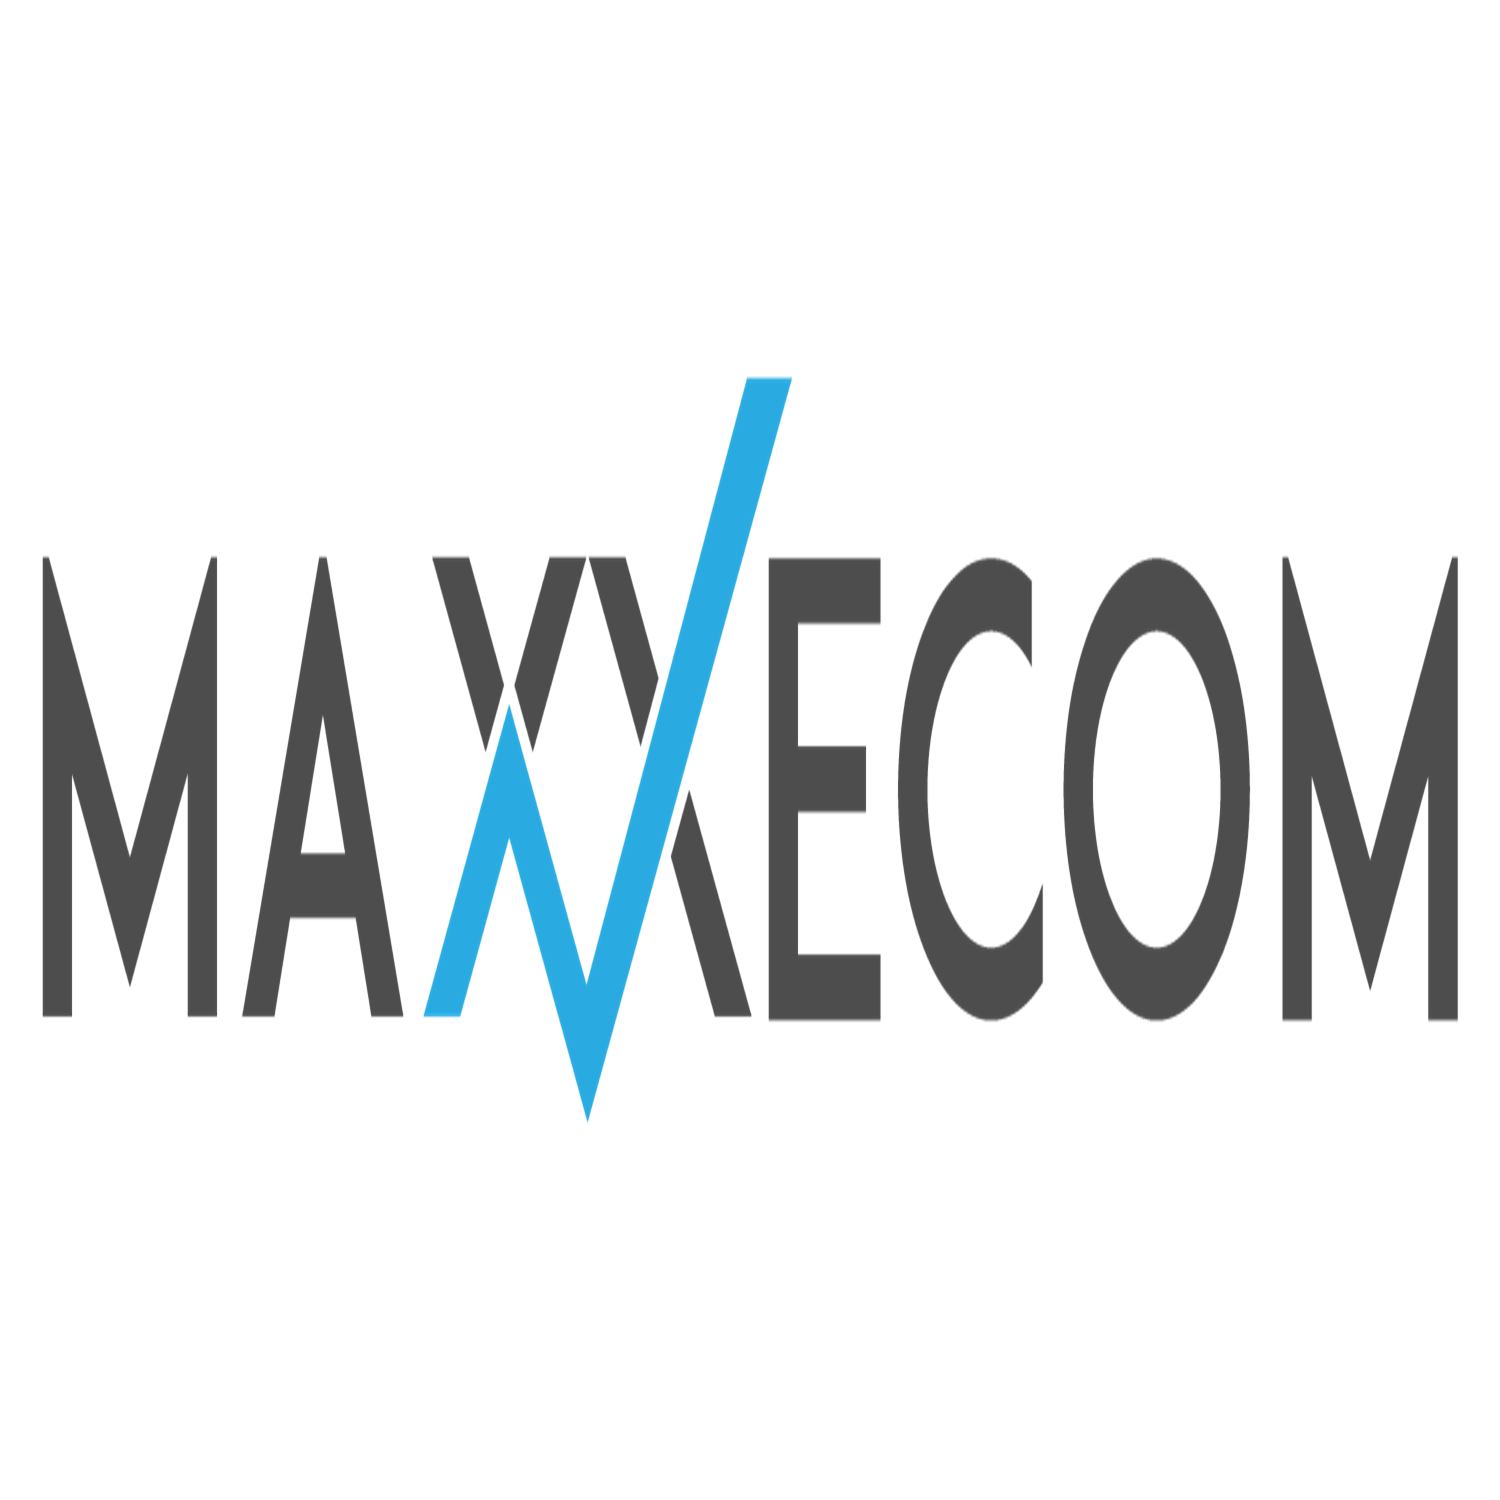 Maxxecom